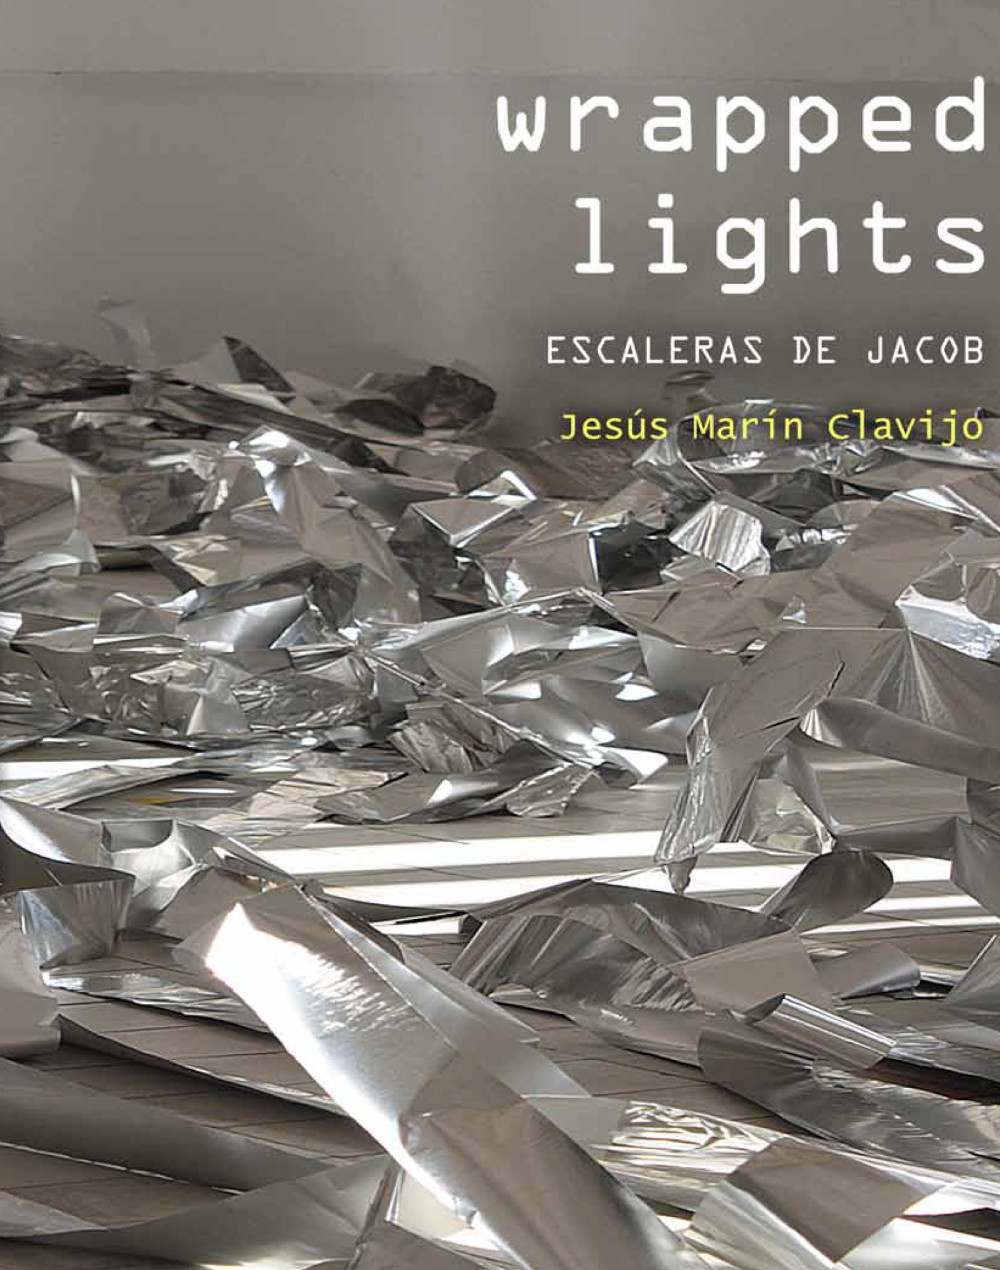 Catálogo Wrapped lights